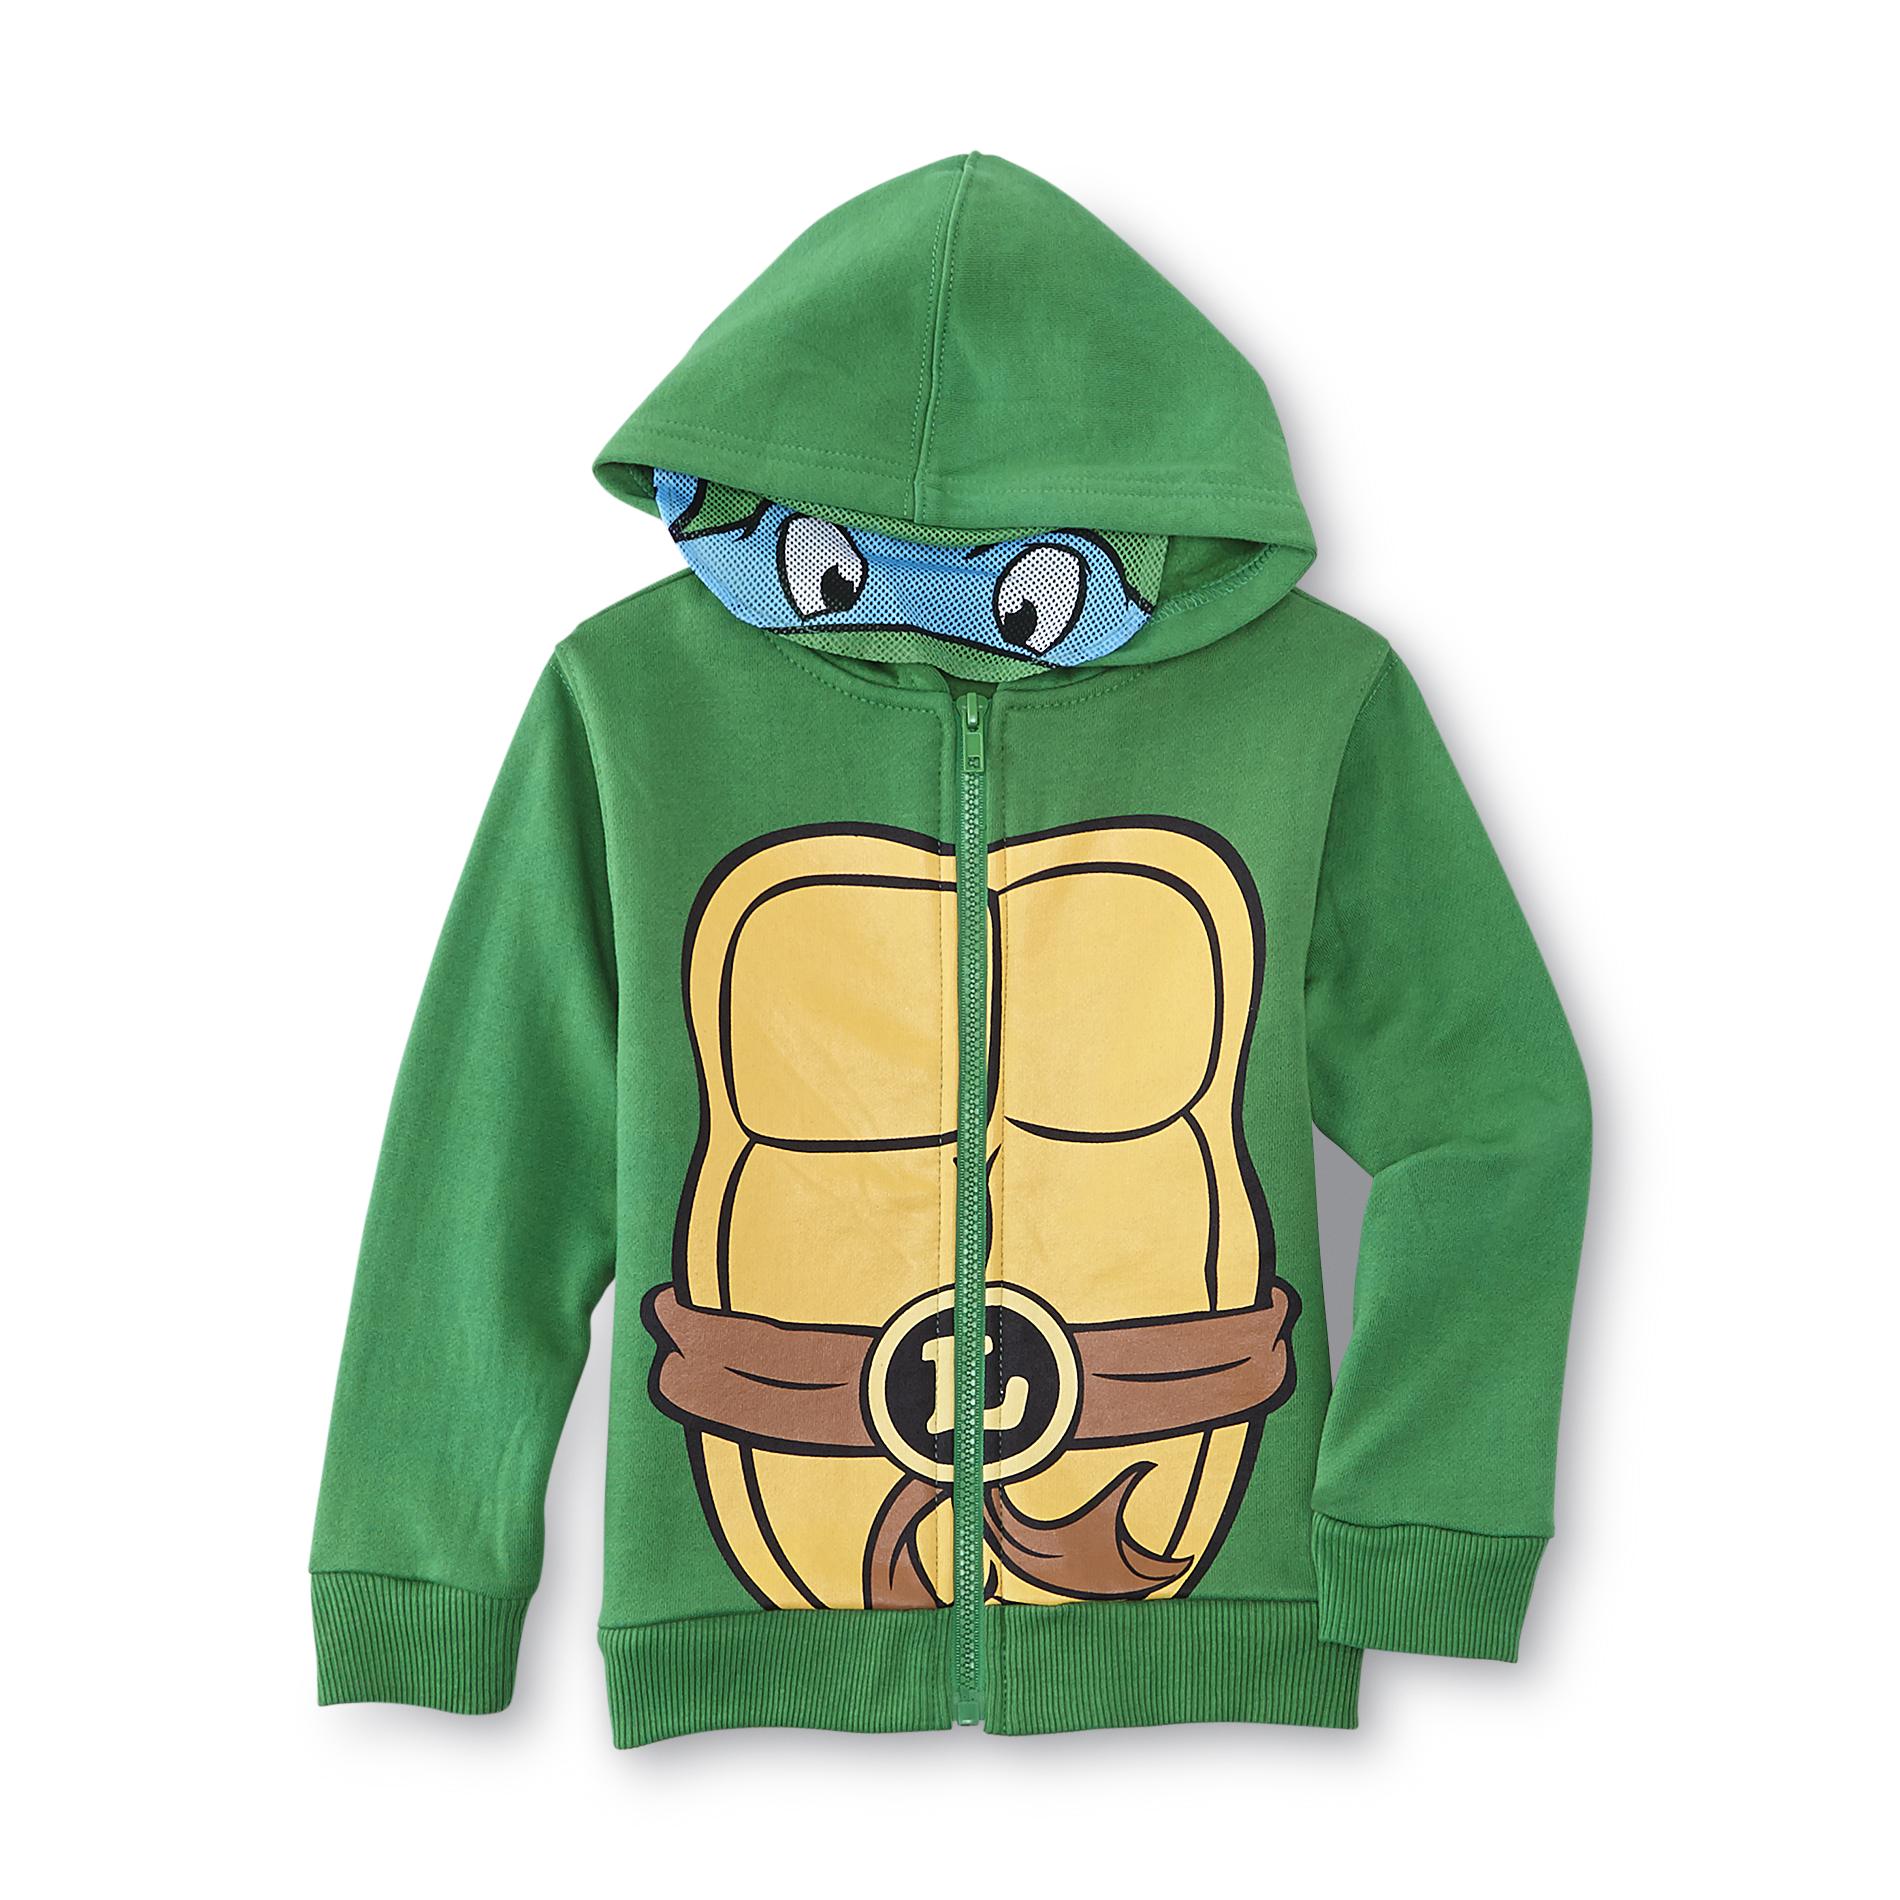 Nickelodeon Teenage Mutant Ninja Turtles Toddler Boy's Costume Hoodie Jacket